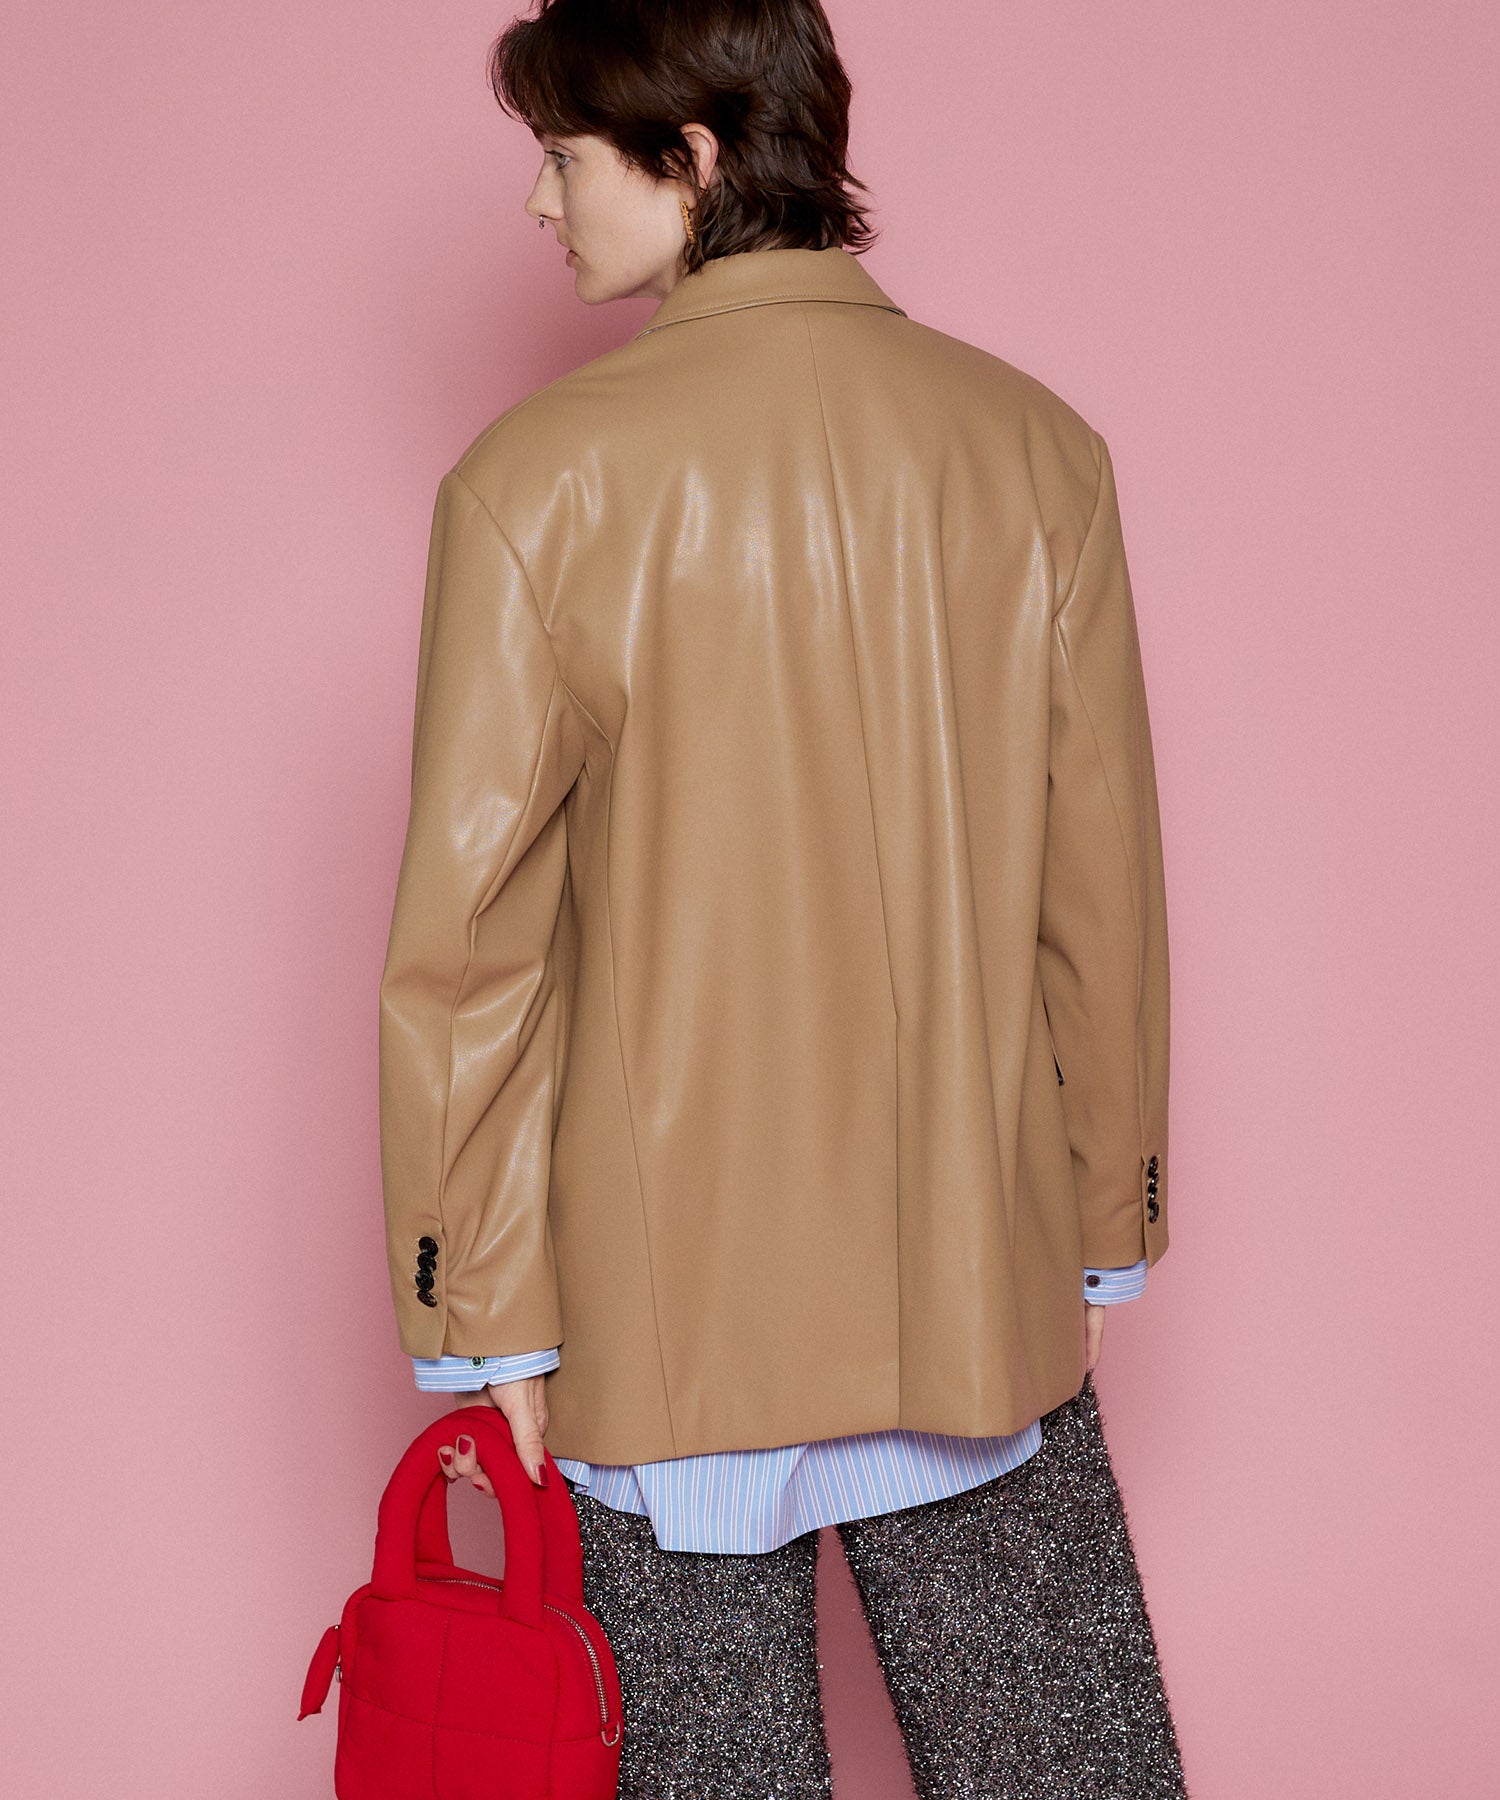 【SALE】Vegan Leather Single Jacket